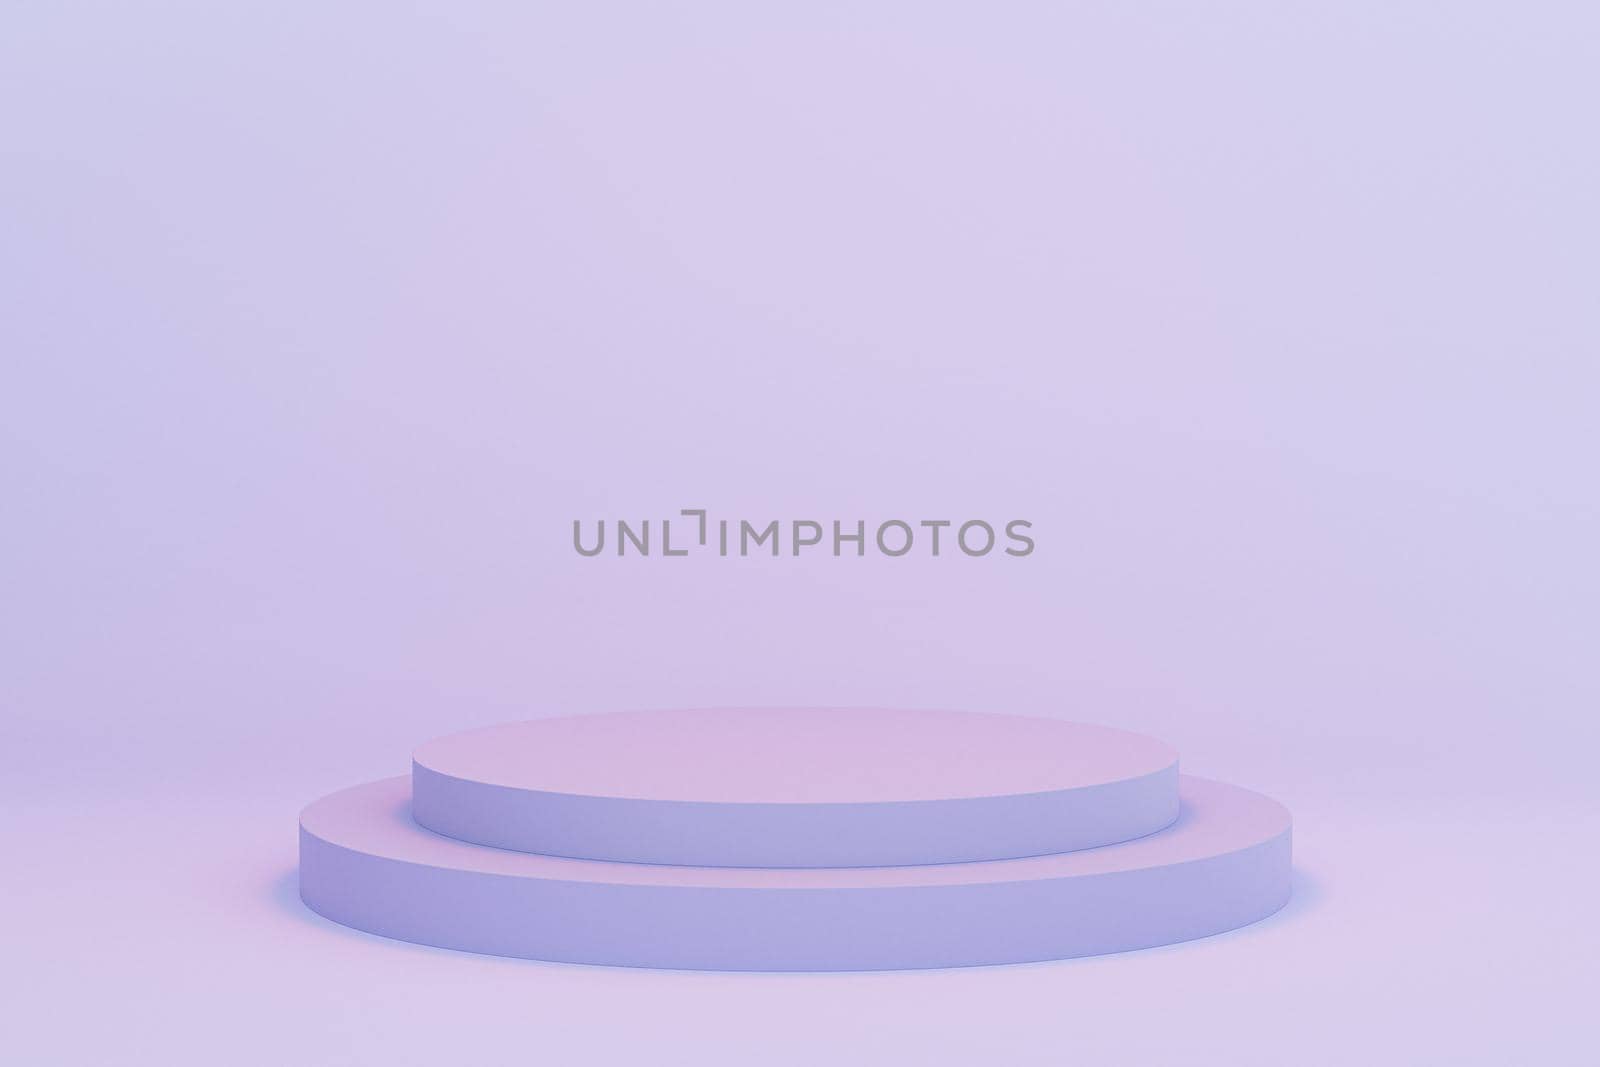 Cylinder podium or pedestals for products or advertising on pastel blue background, minimal 3d illustration render